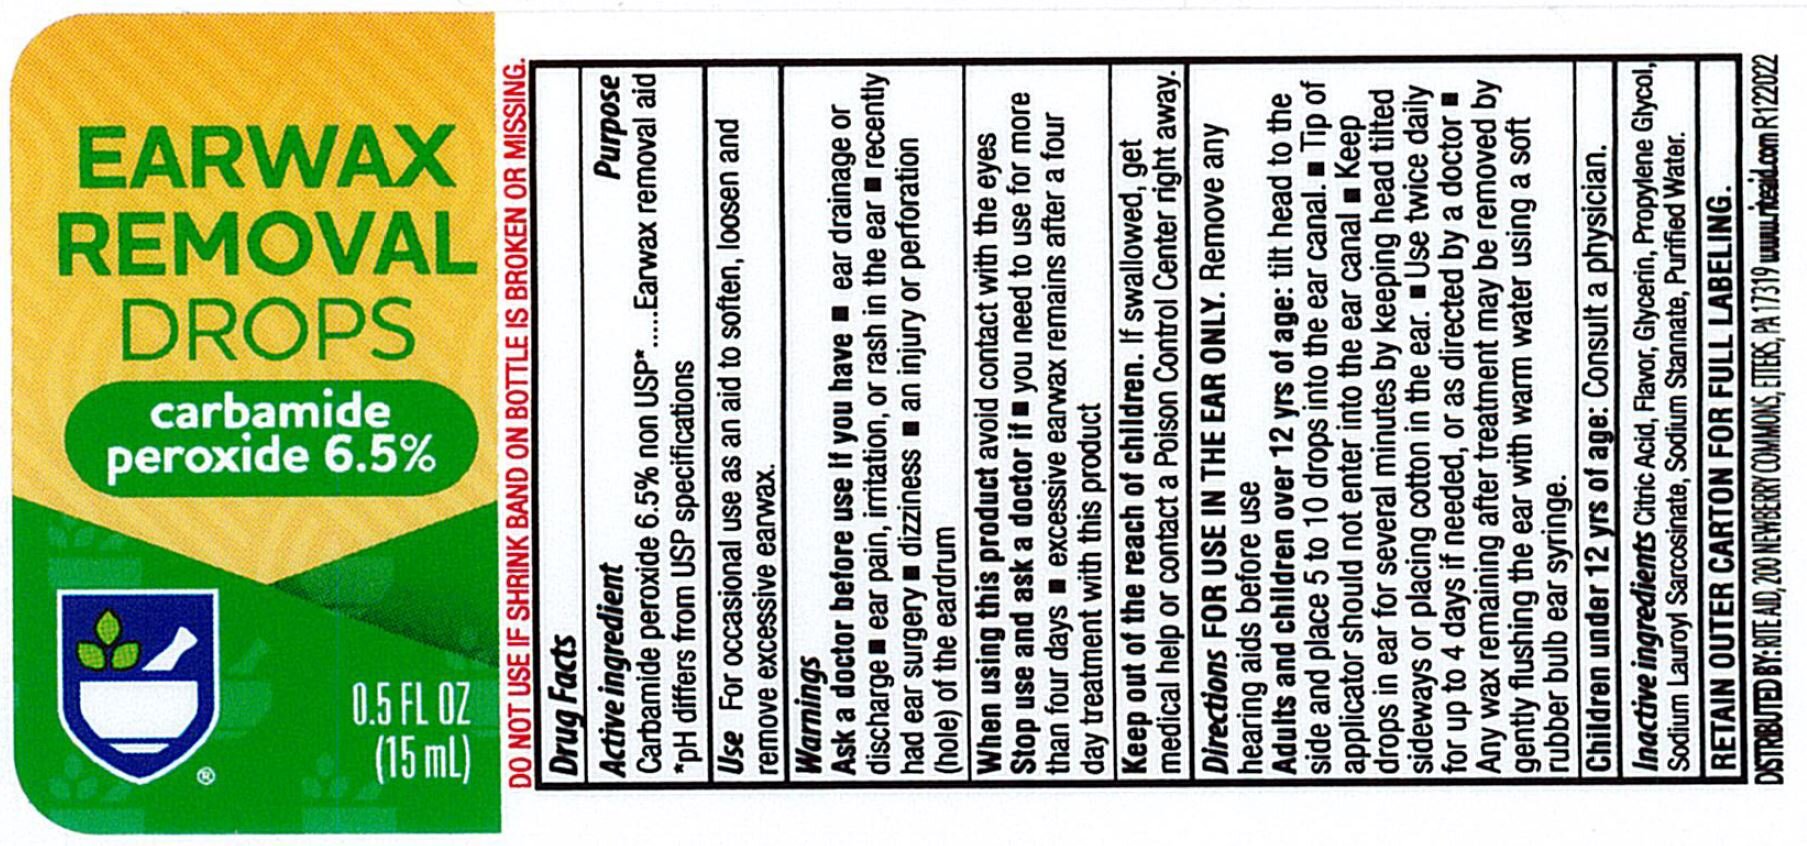 Rite Aid Earwax Label 12-30-22